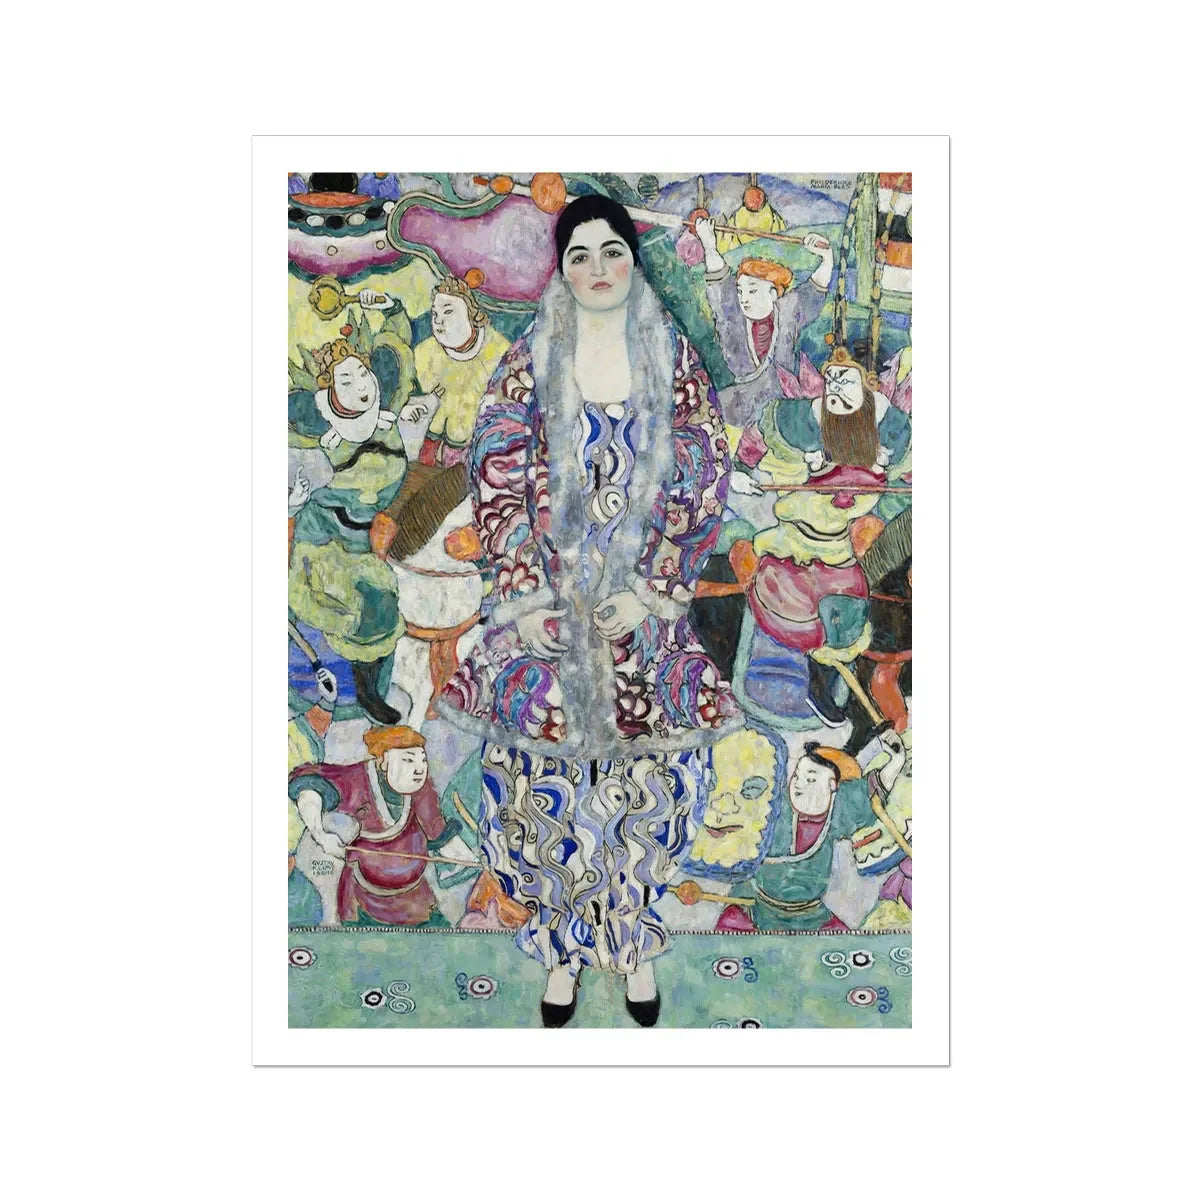 Friederike Maria Beer By Gustav Klimt Fine Art Print - 24’x32’ - Posters Prints & Visual Artwork - Aesthetic Art